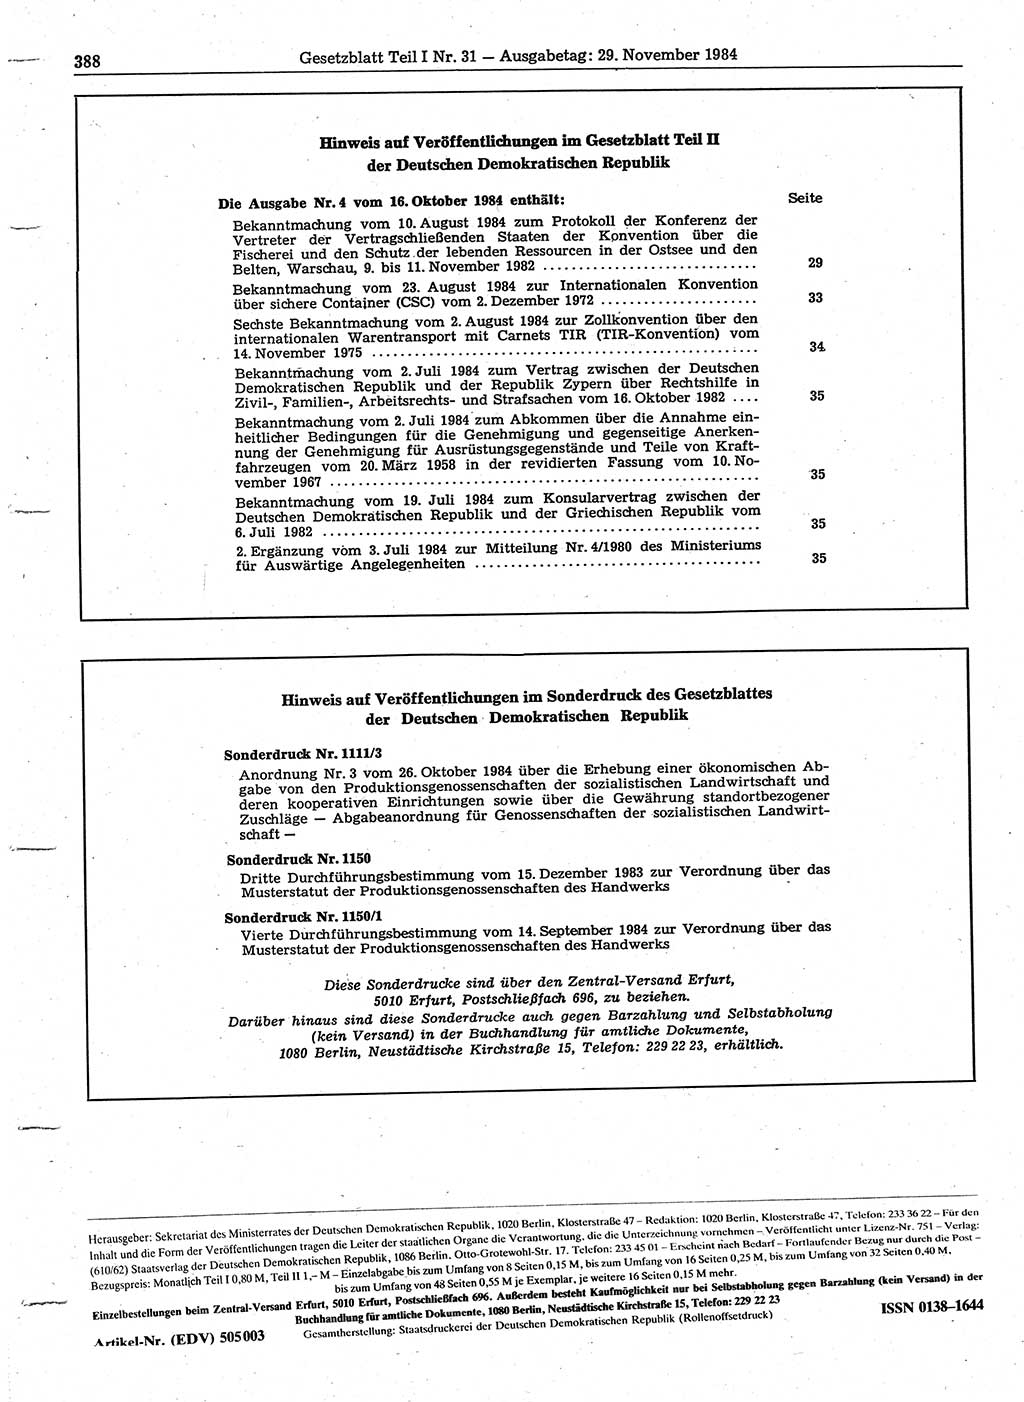 Gesetzblatt (GBl.) der Deutschen Demokratischen Republik (DDR) Teil Ⅰ 1984, Seite 388 (GBl. DDR Ⅰ 1984, S. 388)